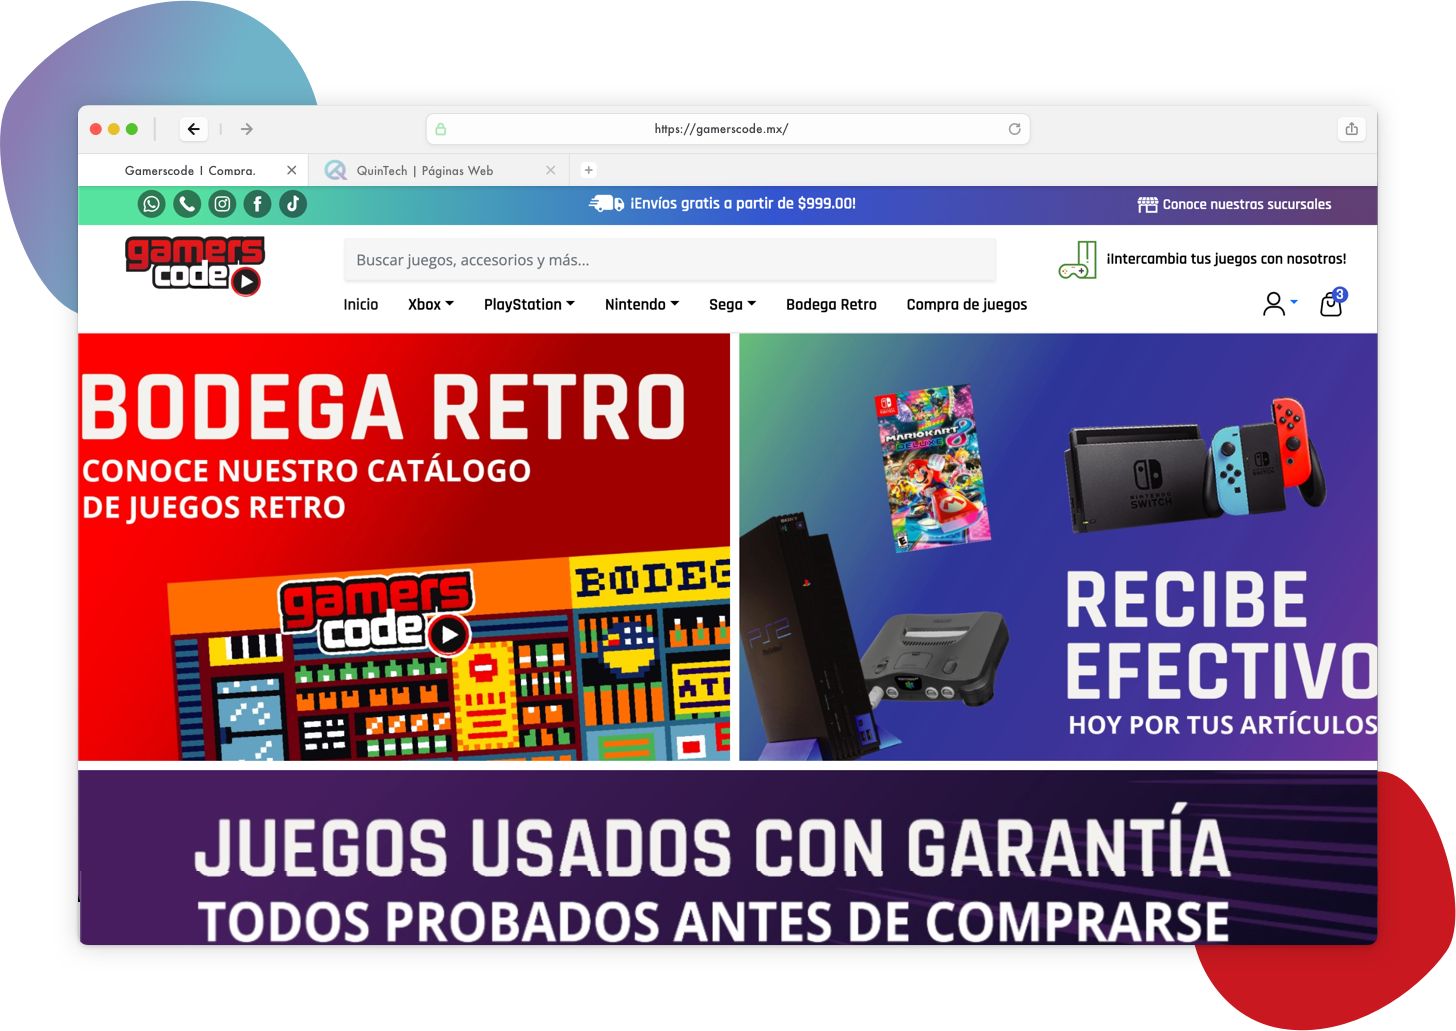 Diseño de Paginas Web En Guadalajara